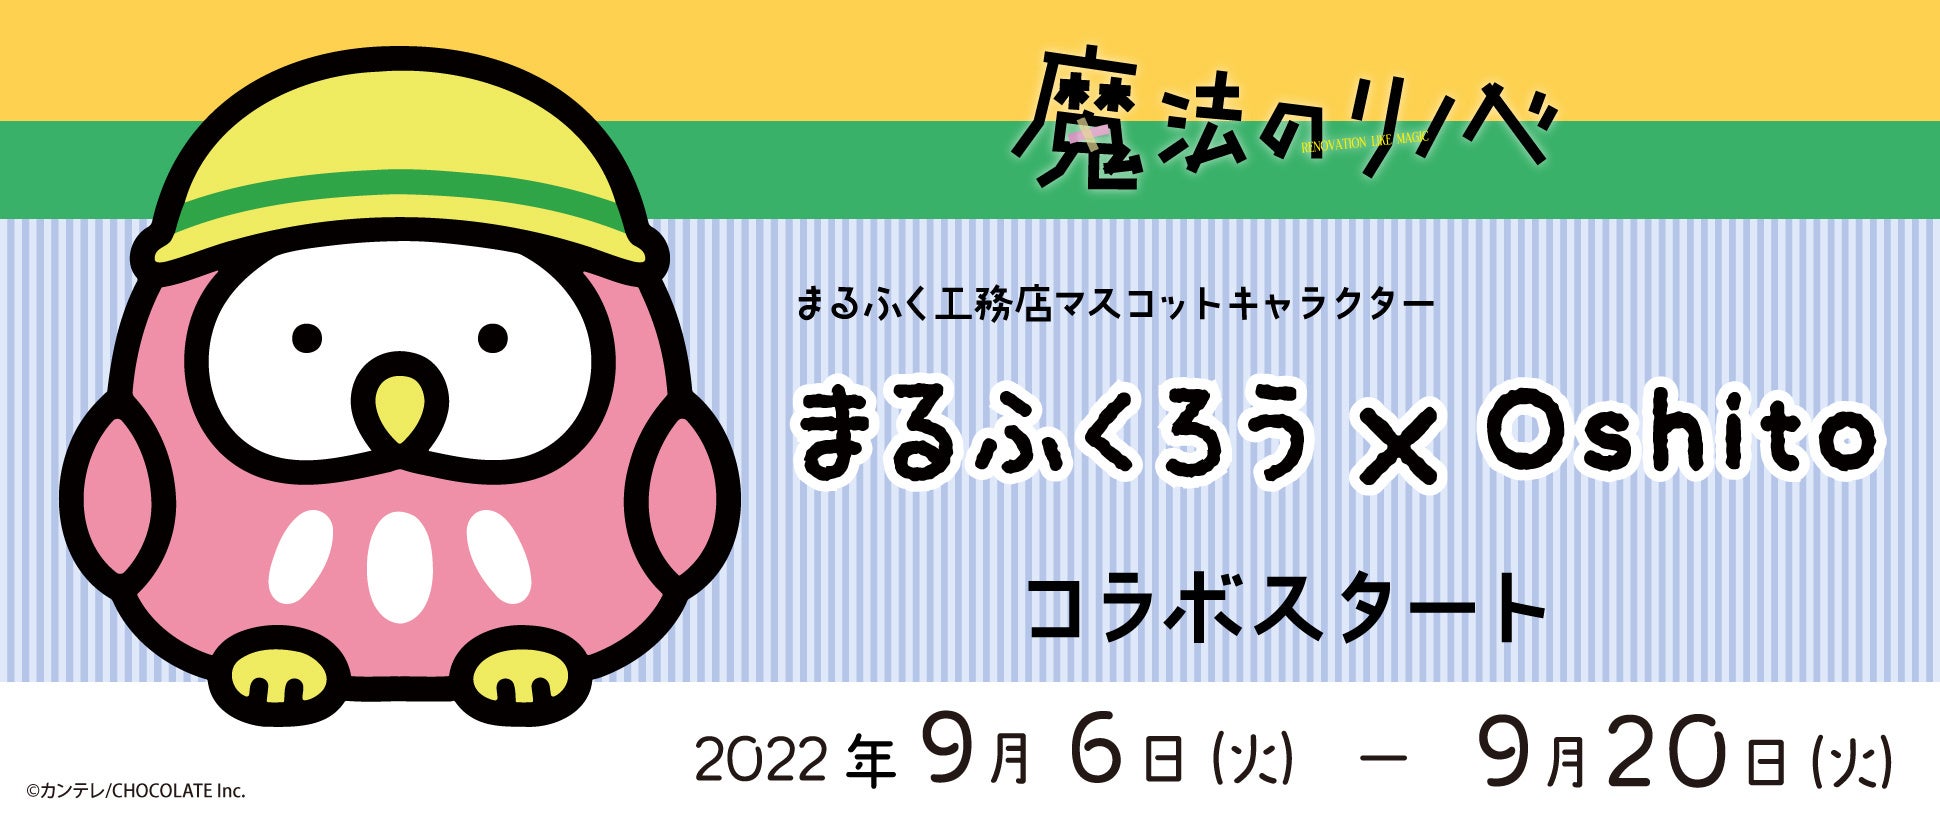 デジタルアニメーションスタジオ『100studio』が2023年4月の福岡スタジオ開設にあわせ、CGクリエイターを募集！